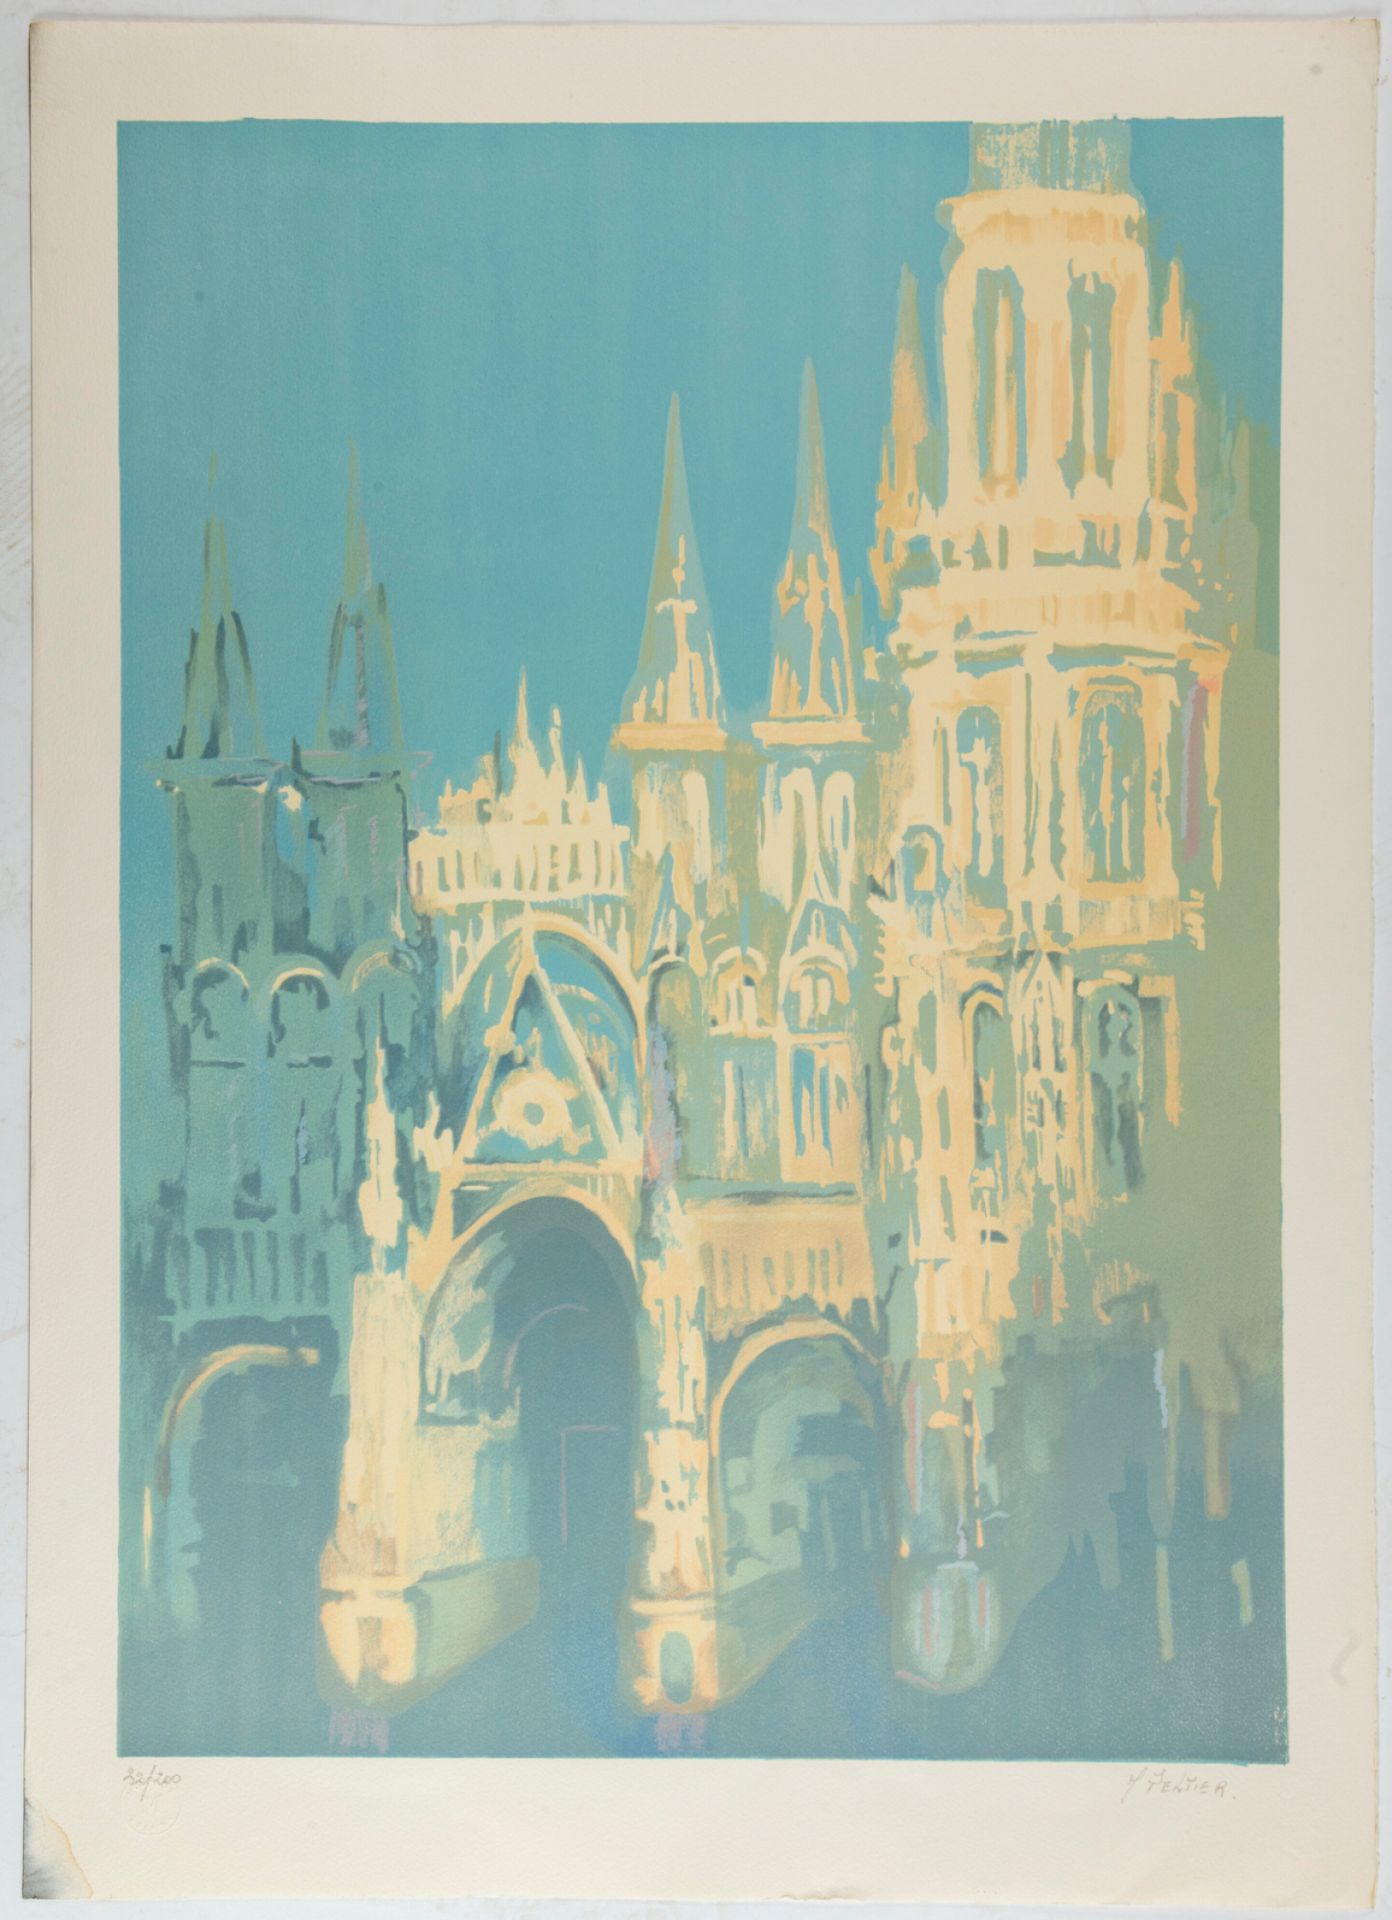 PELTIER Marcel PELTIER (1924-1998)

Cathédrale de Rouen

Lithographie, contresig&hellip;